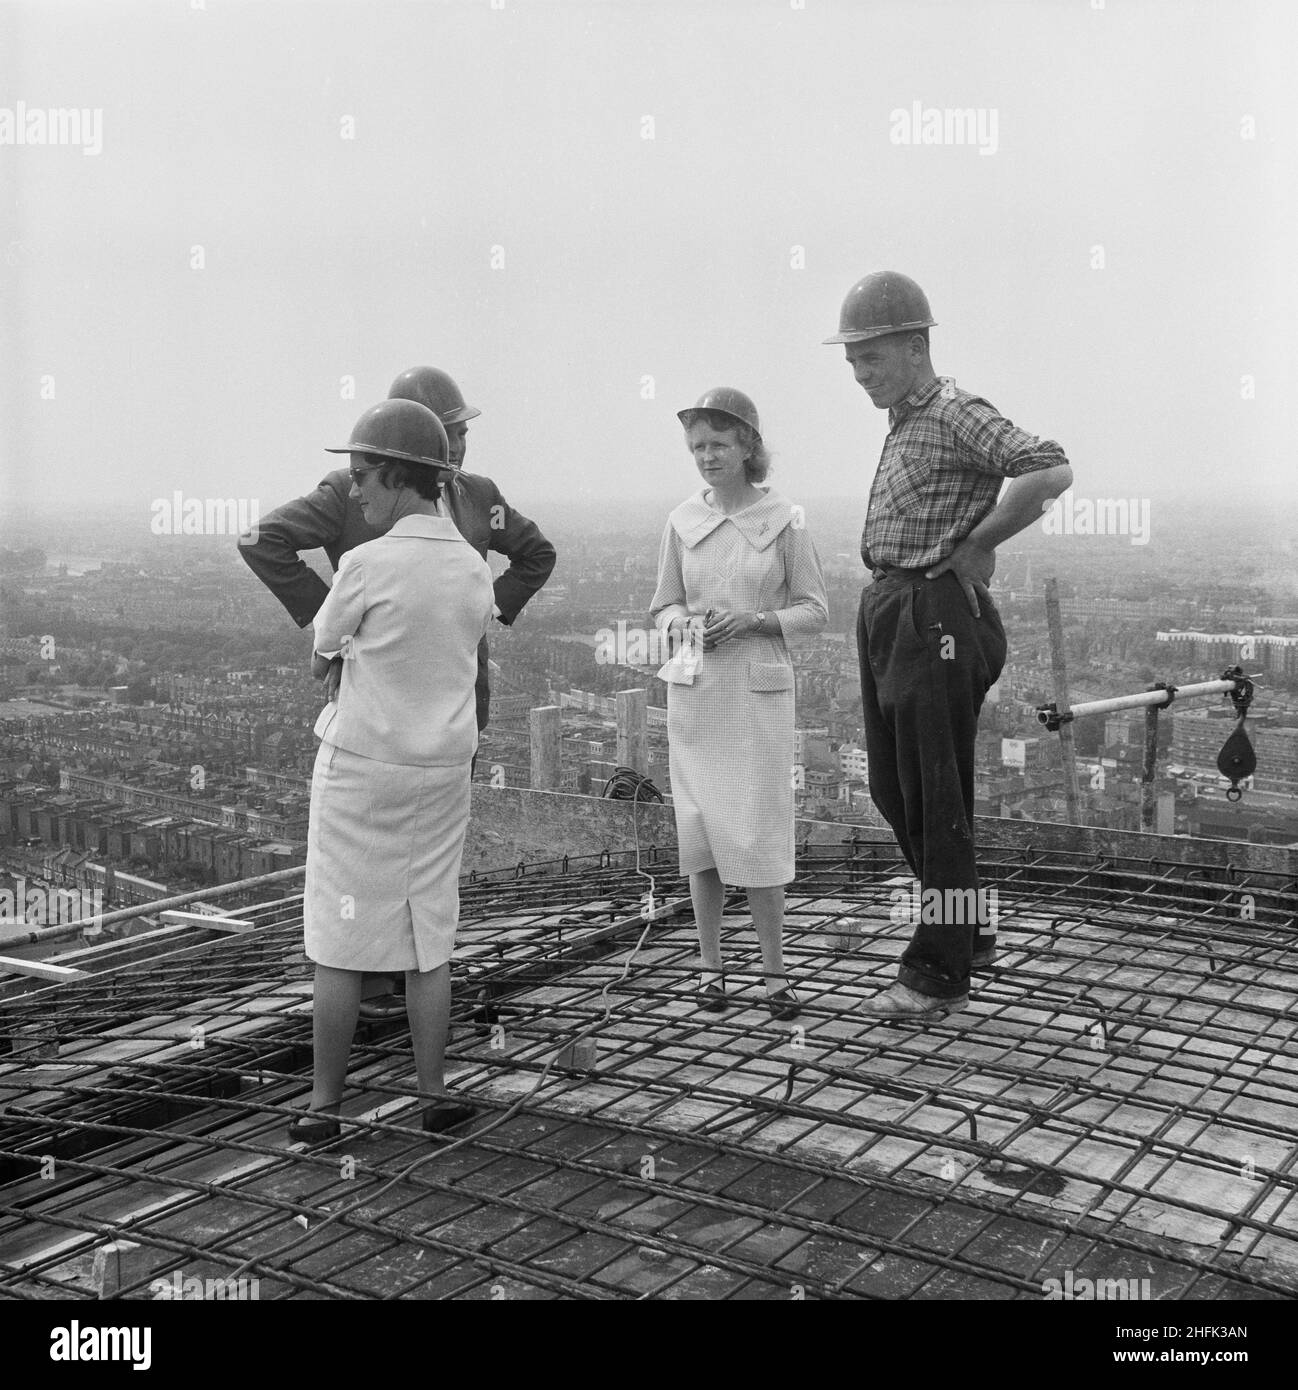 Empress State Building, Lillie Road, Earl's Court, Hammersmith und Fulham, London, 03/07/1961. Zwei Frauen mit einer Bauarbeiterin und einem Manager versammelten sich auf dem Dach des Empress State Building, um den letzten Beton zu beobachten. Laing baute die Fundamente und den Stahlbetonrahmen des Gebäudes, die Arbeiten begannen im November 1959 und liefen bis Juli 1961. Die Gruppe wurde auf dem Dach versammelt, um den letzten Betonguss zu beobachten, um das Projekt abzuschließen. Stockfoto